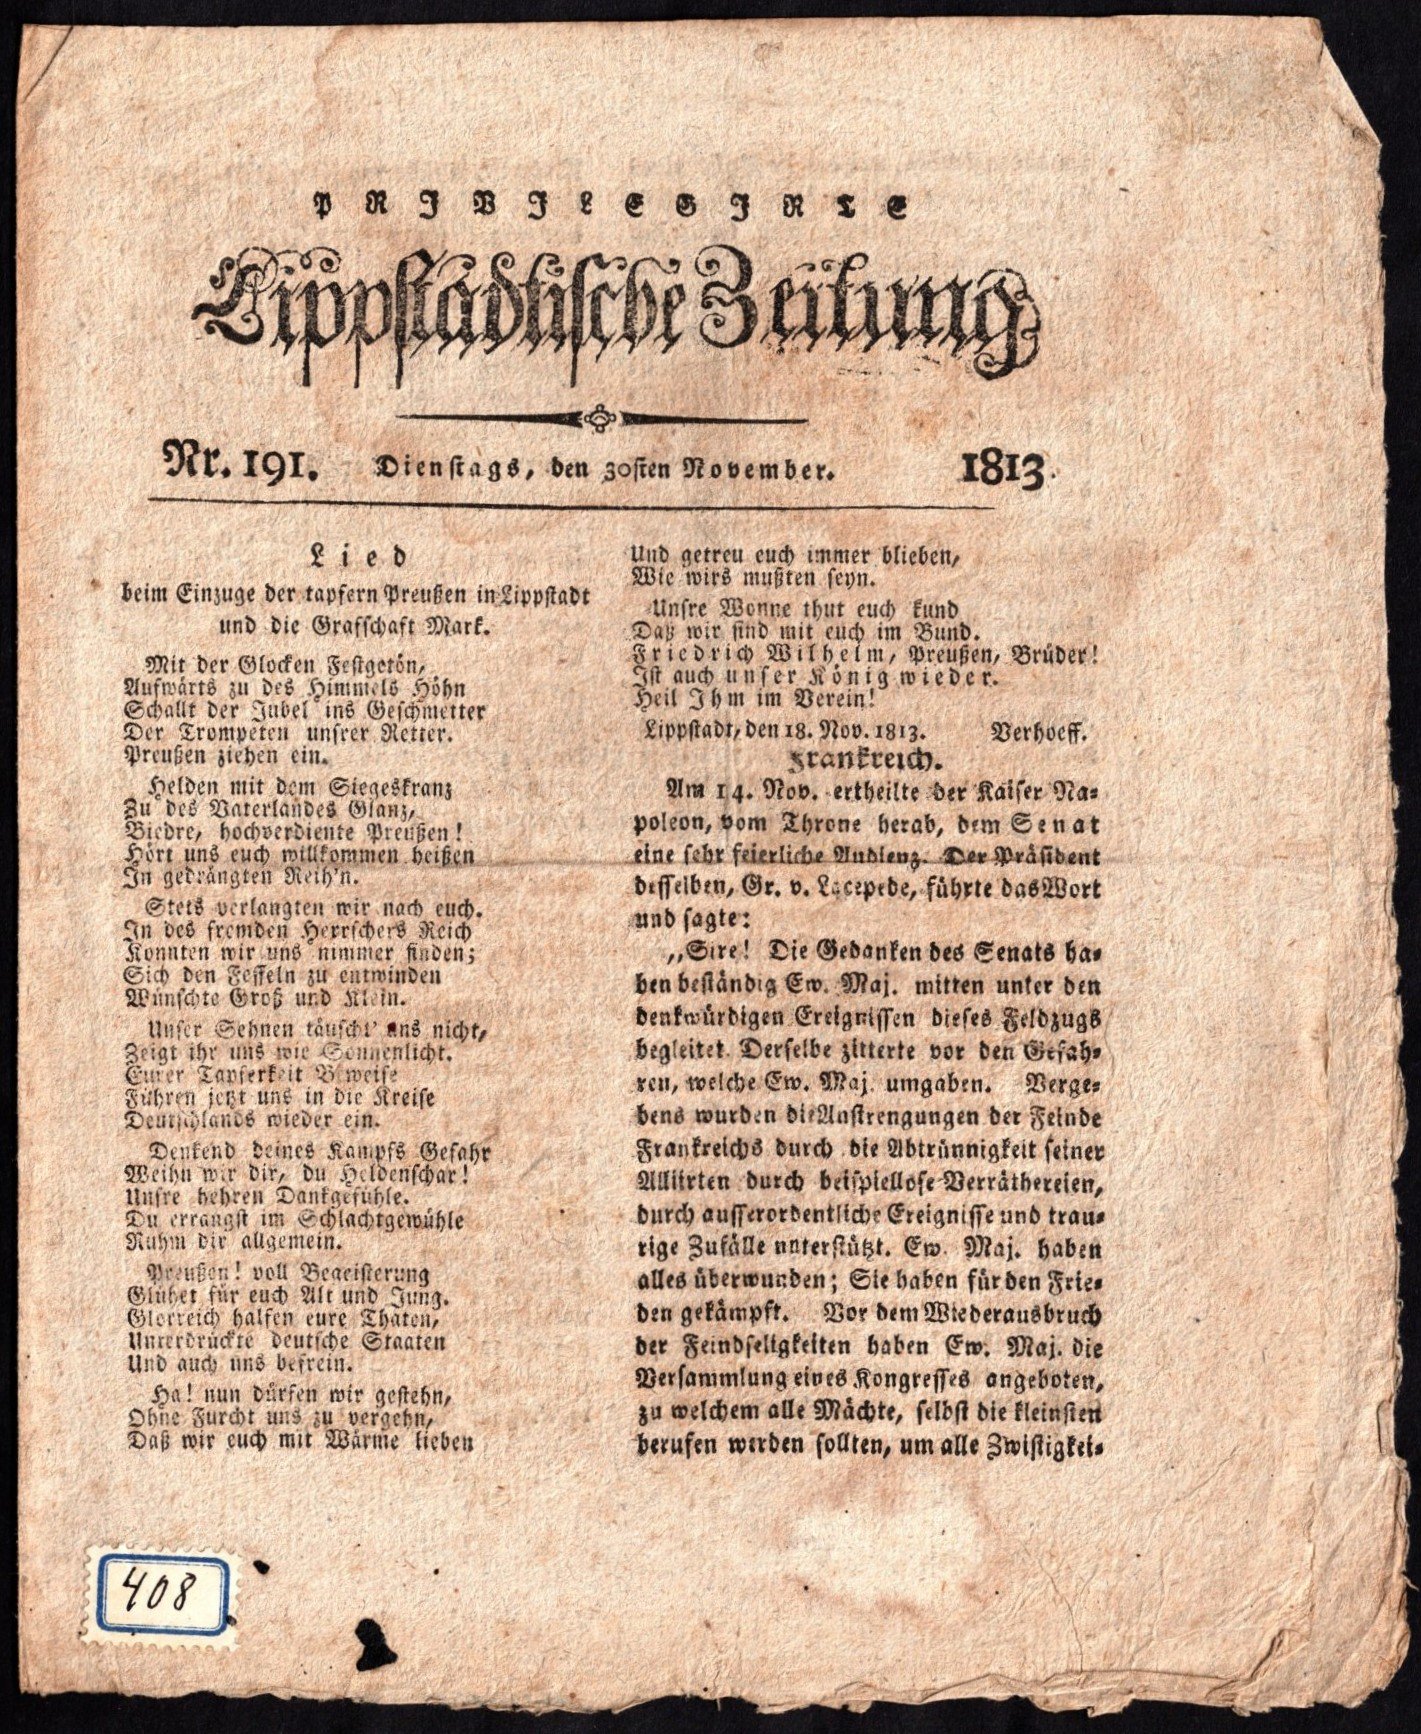 Zeitung : Lippstädtische Zeitung 30.11.1813 (Stadtmuseum Lippstadt RR-F)